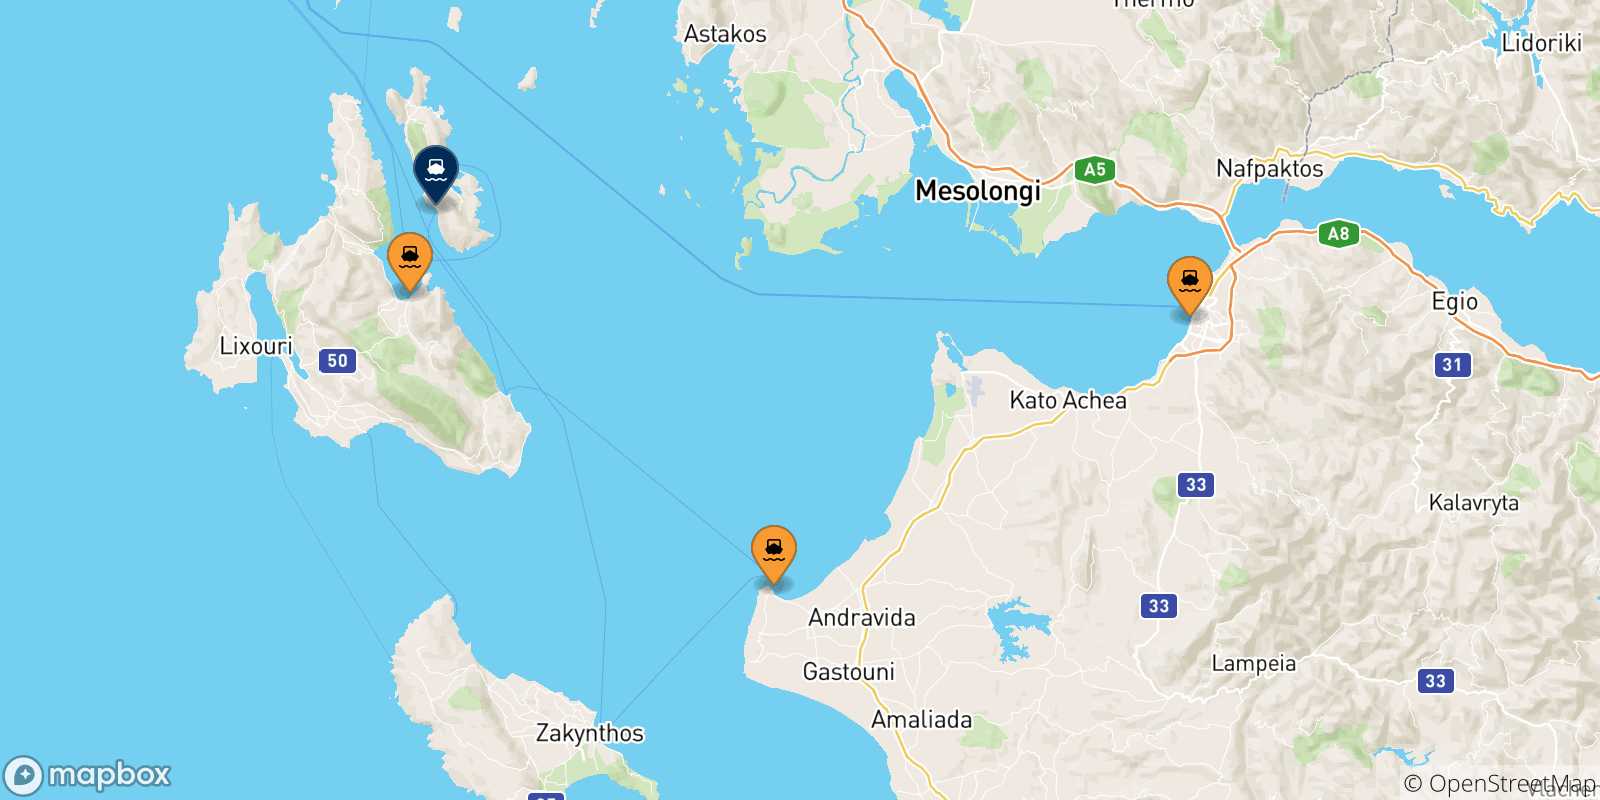 Mappa delle possibili rotte tra la Grecia e Pisaetos (Itaca)